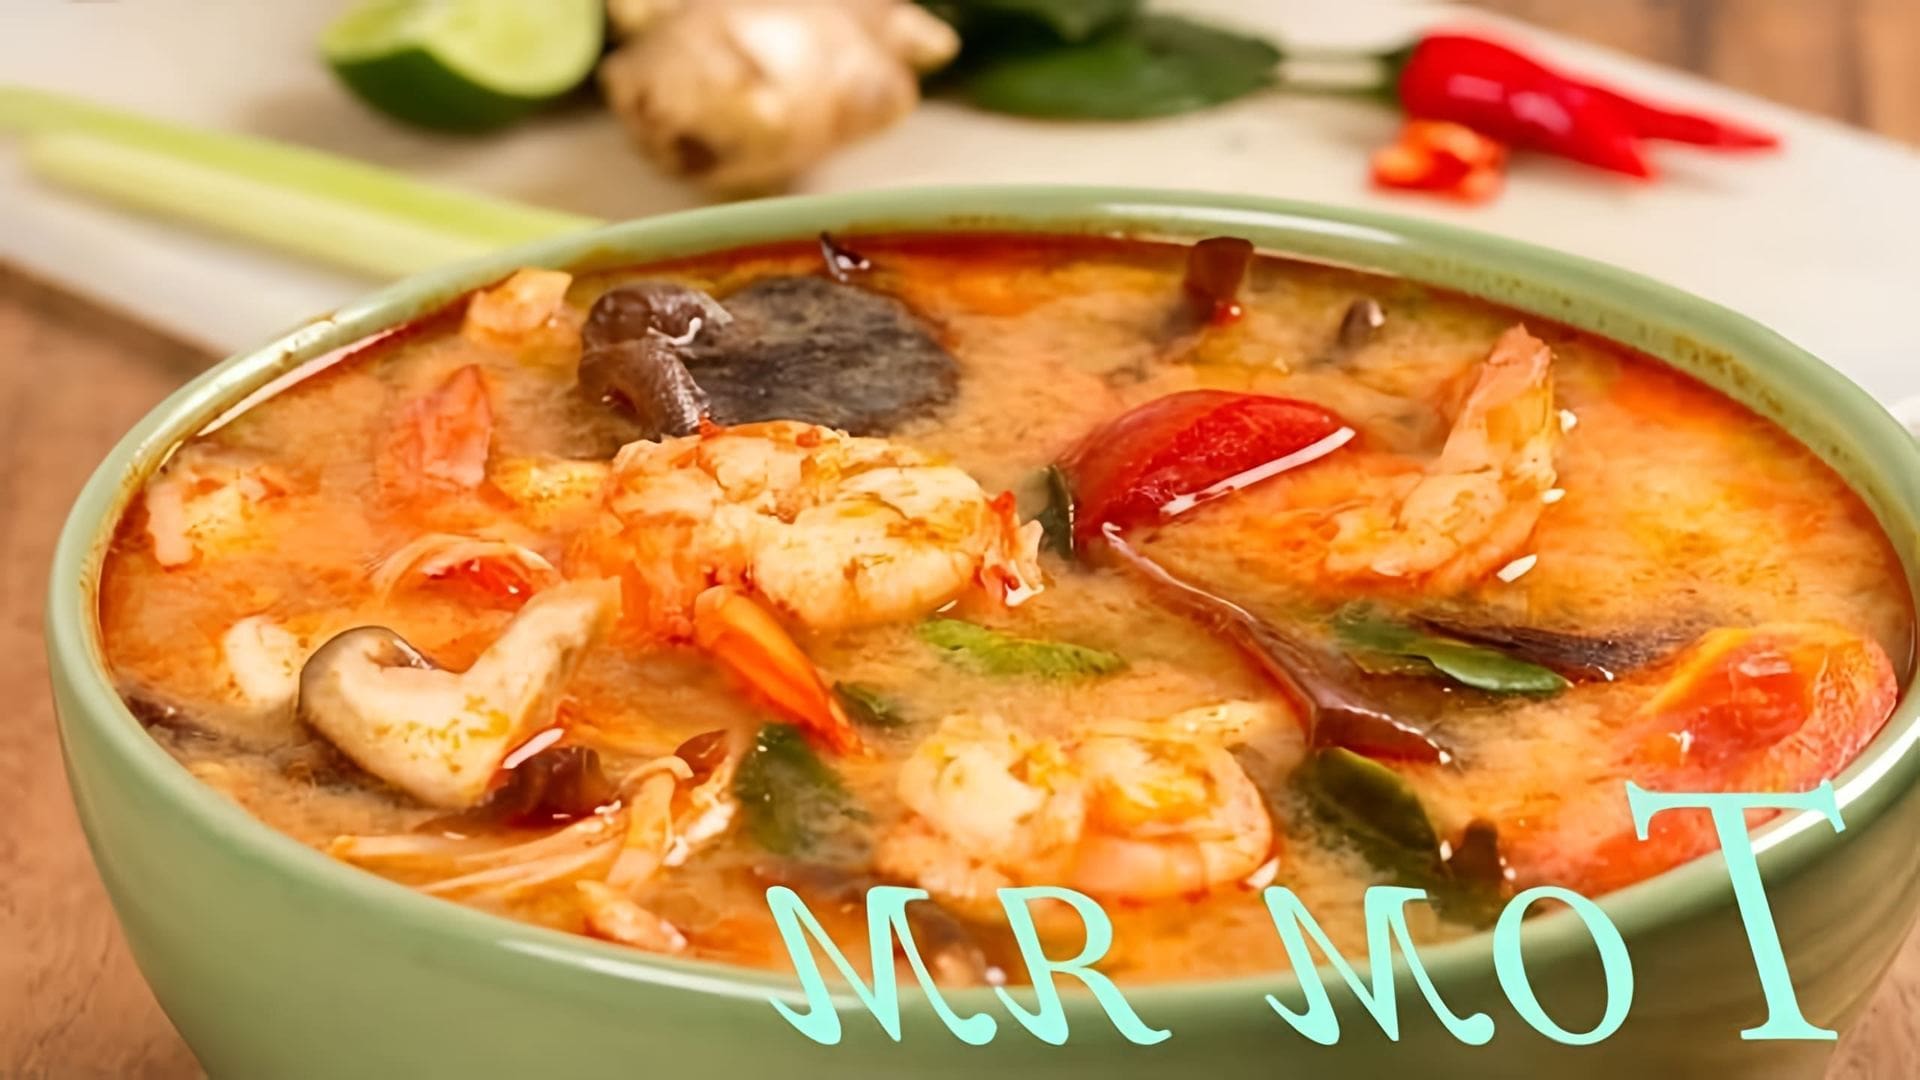 В этом видео демонстрируется рецепт приготовления тайского супа "Том Ям"